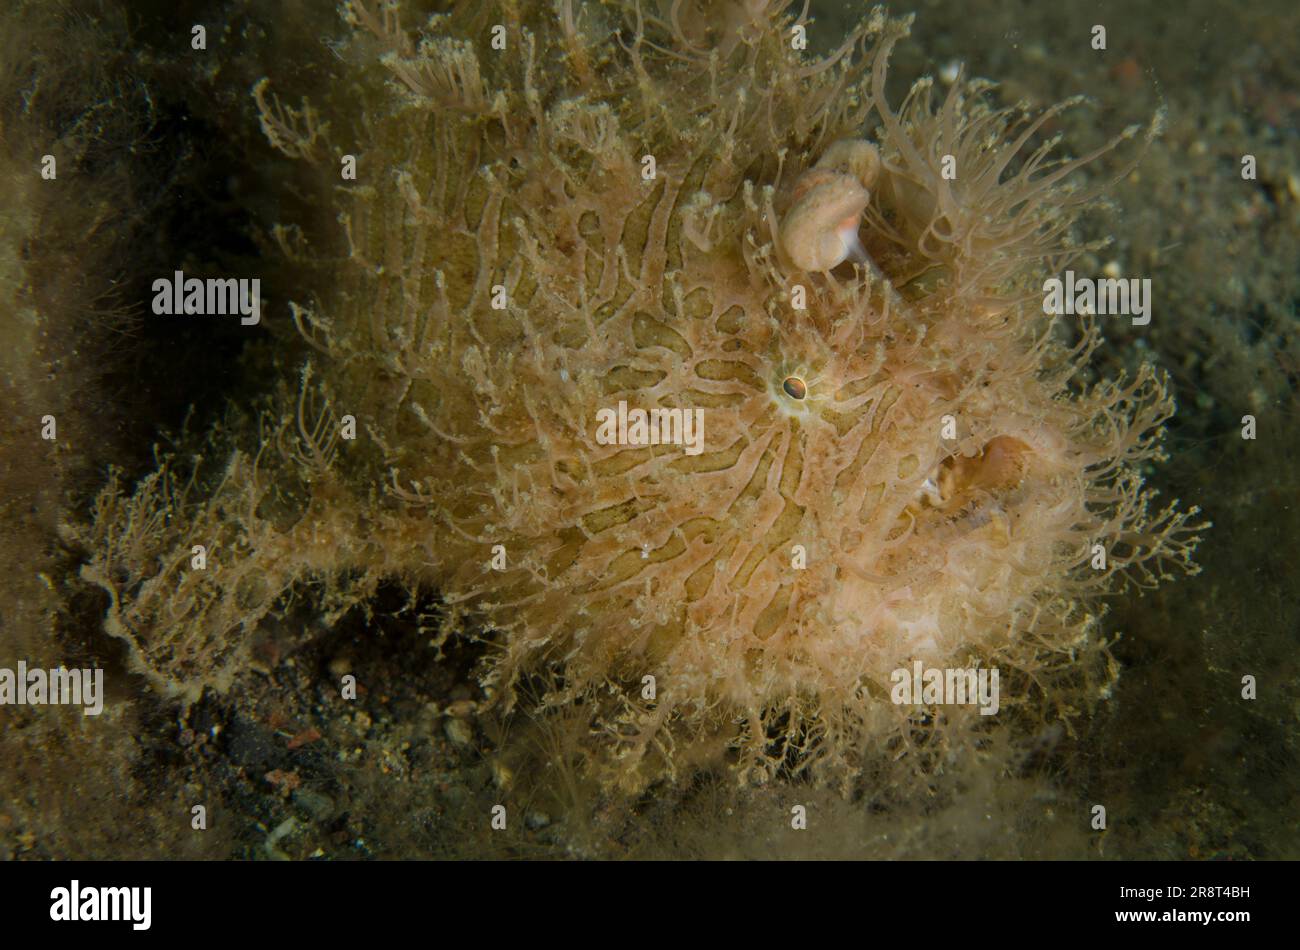 Pesce gatto striato, Antennarius striatus, con richiamo simile a un verme, sito di immersione di Ghost Bay, Amed, Karangasem Regency, Bali, Indonesia, Oceano Indiano Foto Stock